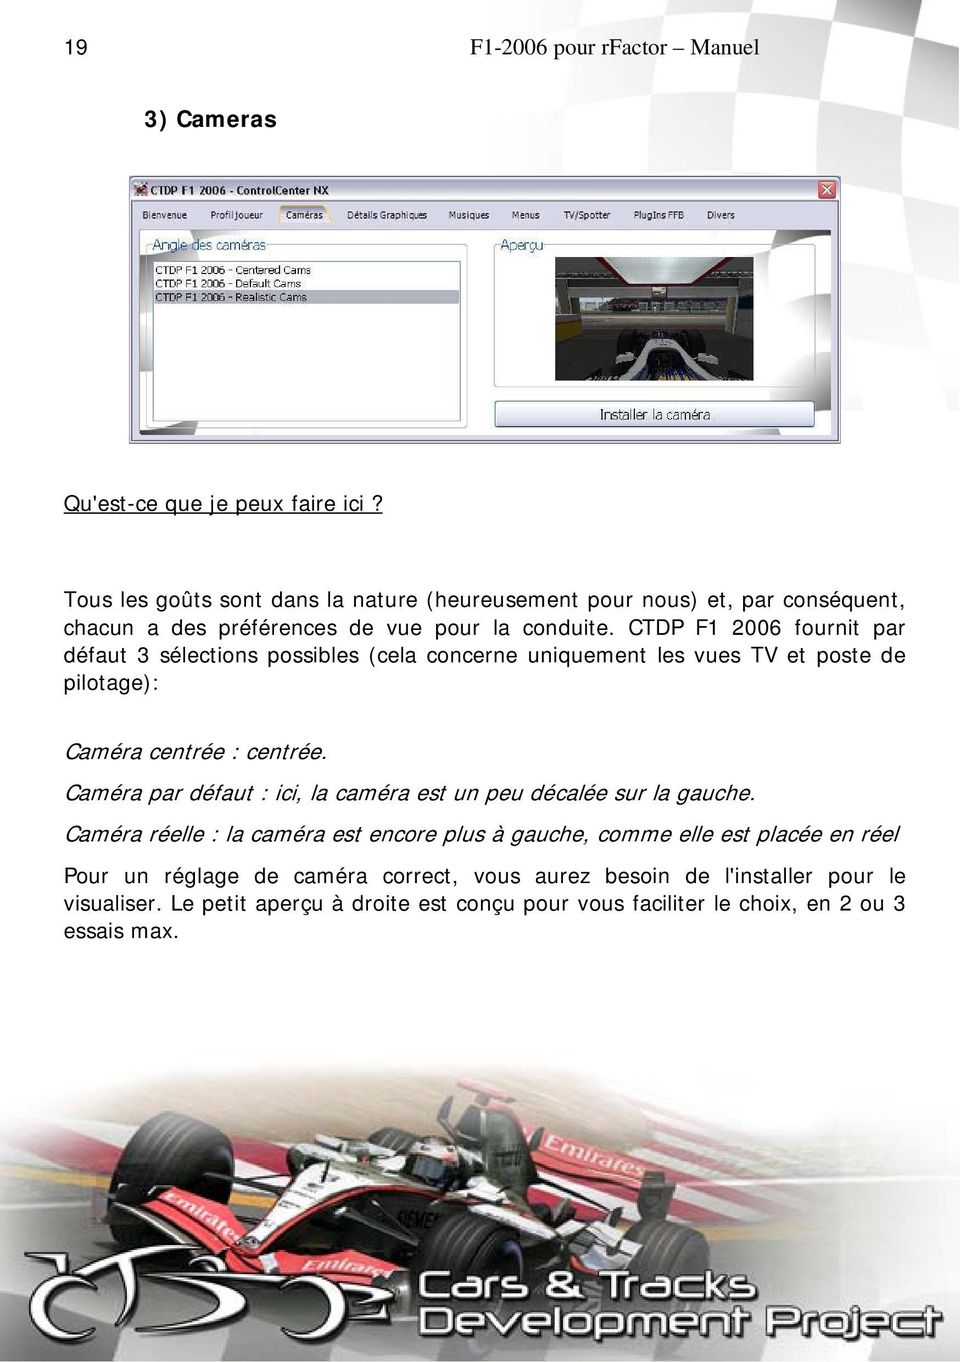 CTDP F1 2006 fournit par défaut 3 sélections possibles (cela concerne uniquement les vues TV et poste de pilotage): Caméra centrée : centrée.